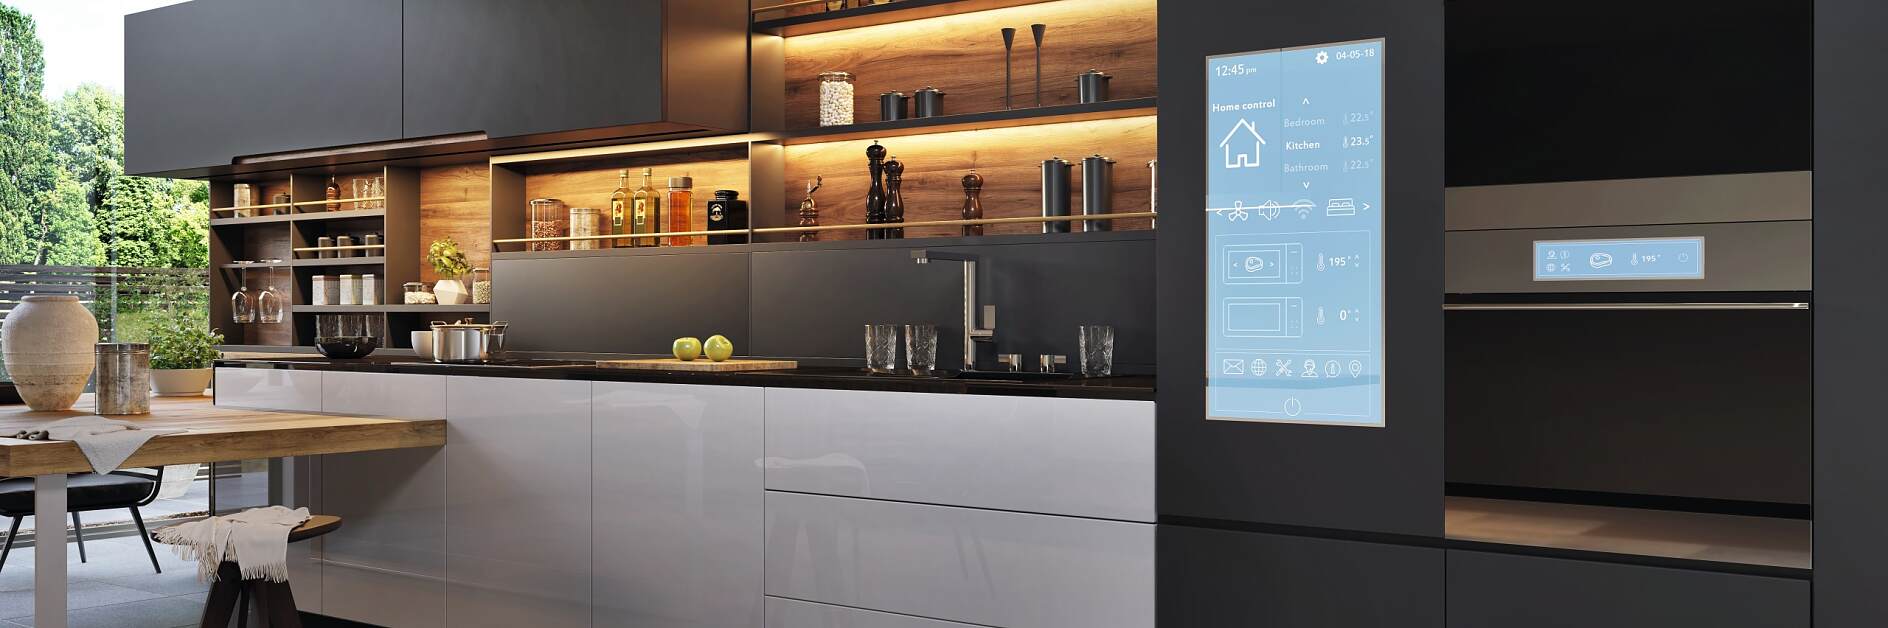 Panneau de commande pour maison intelligente dans une cuisine moderne